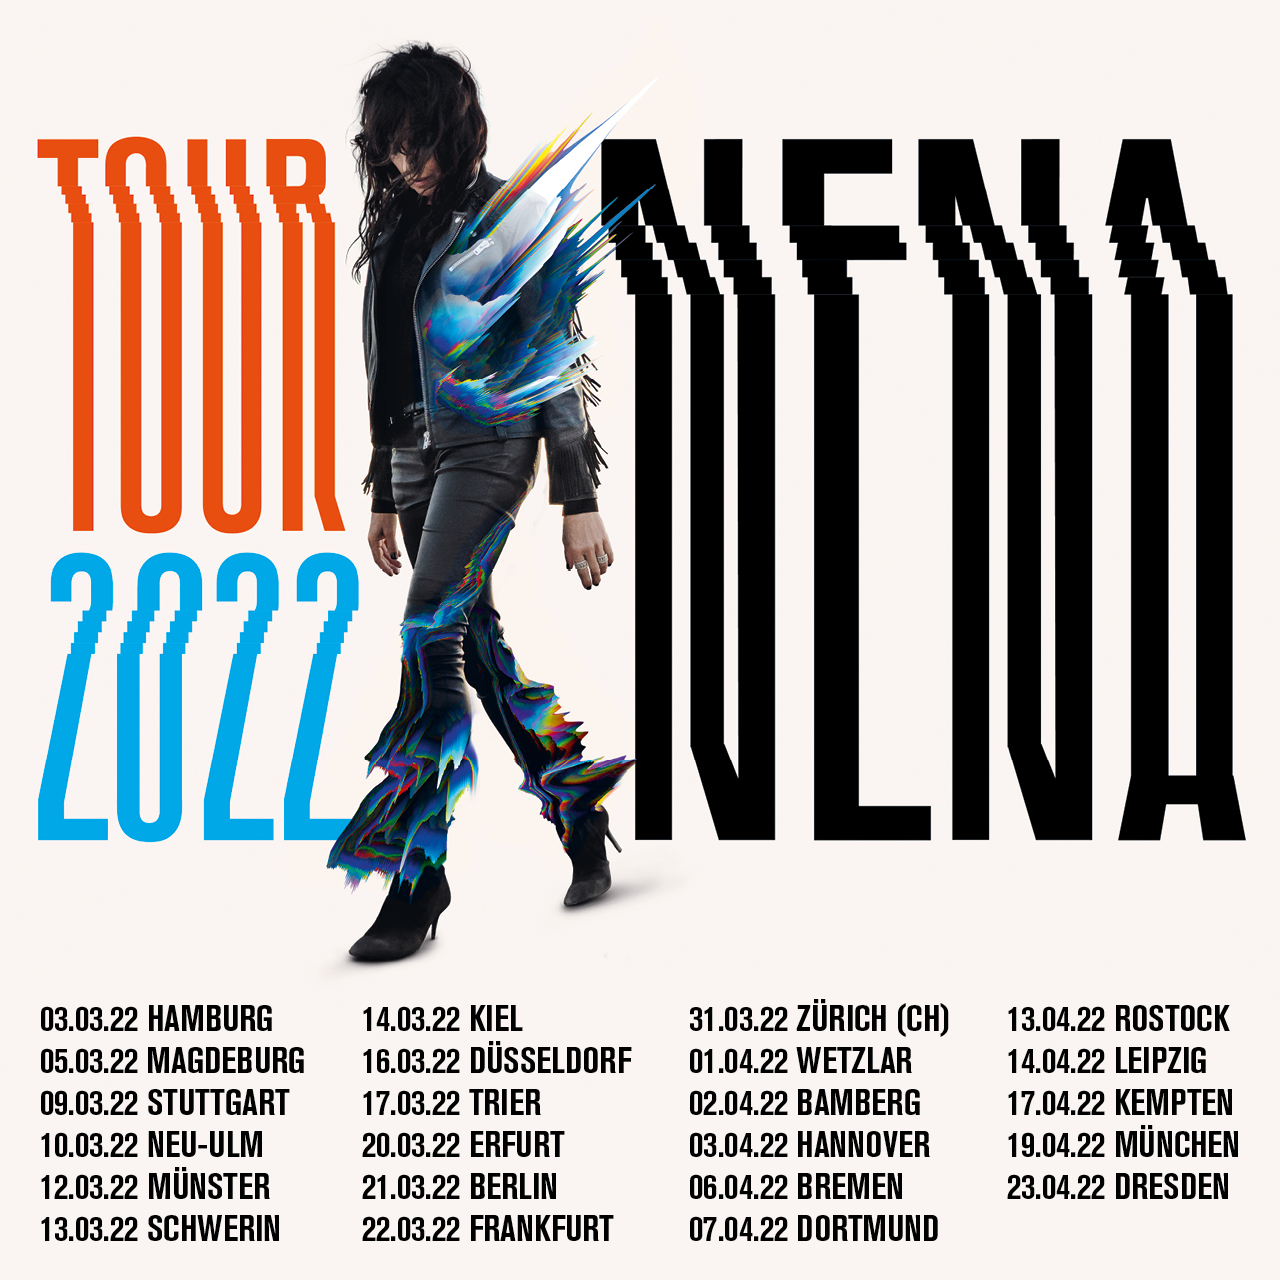 NENA Tour 2022 MEWES Entertainment Group GmbH